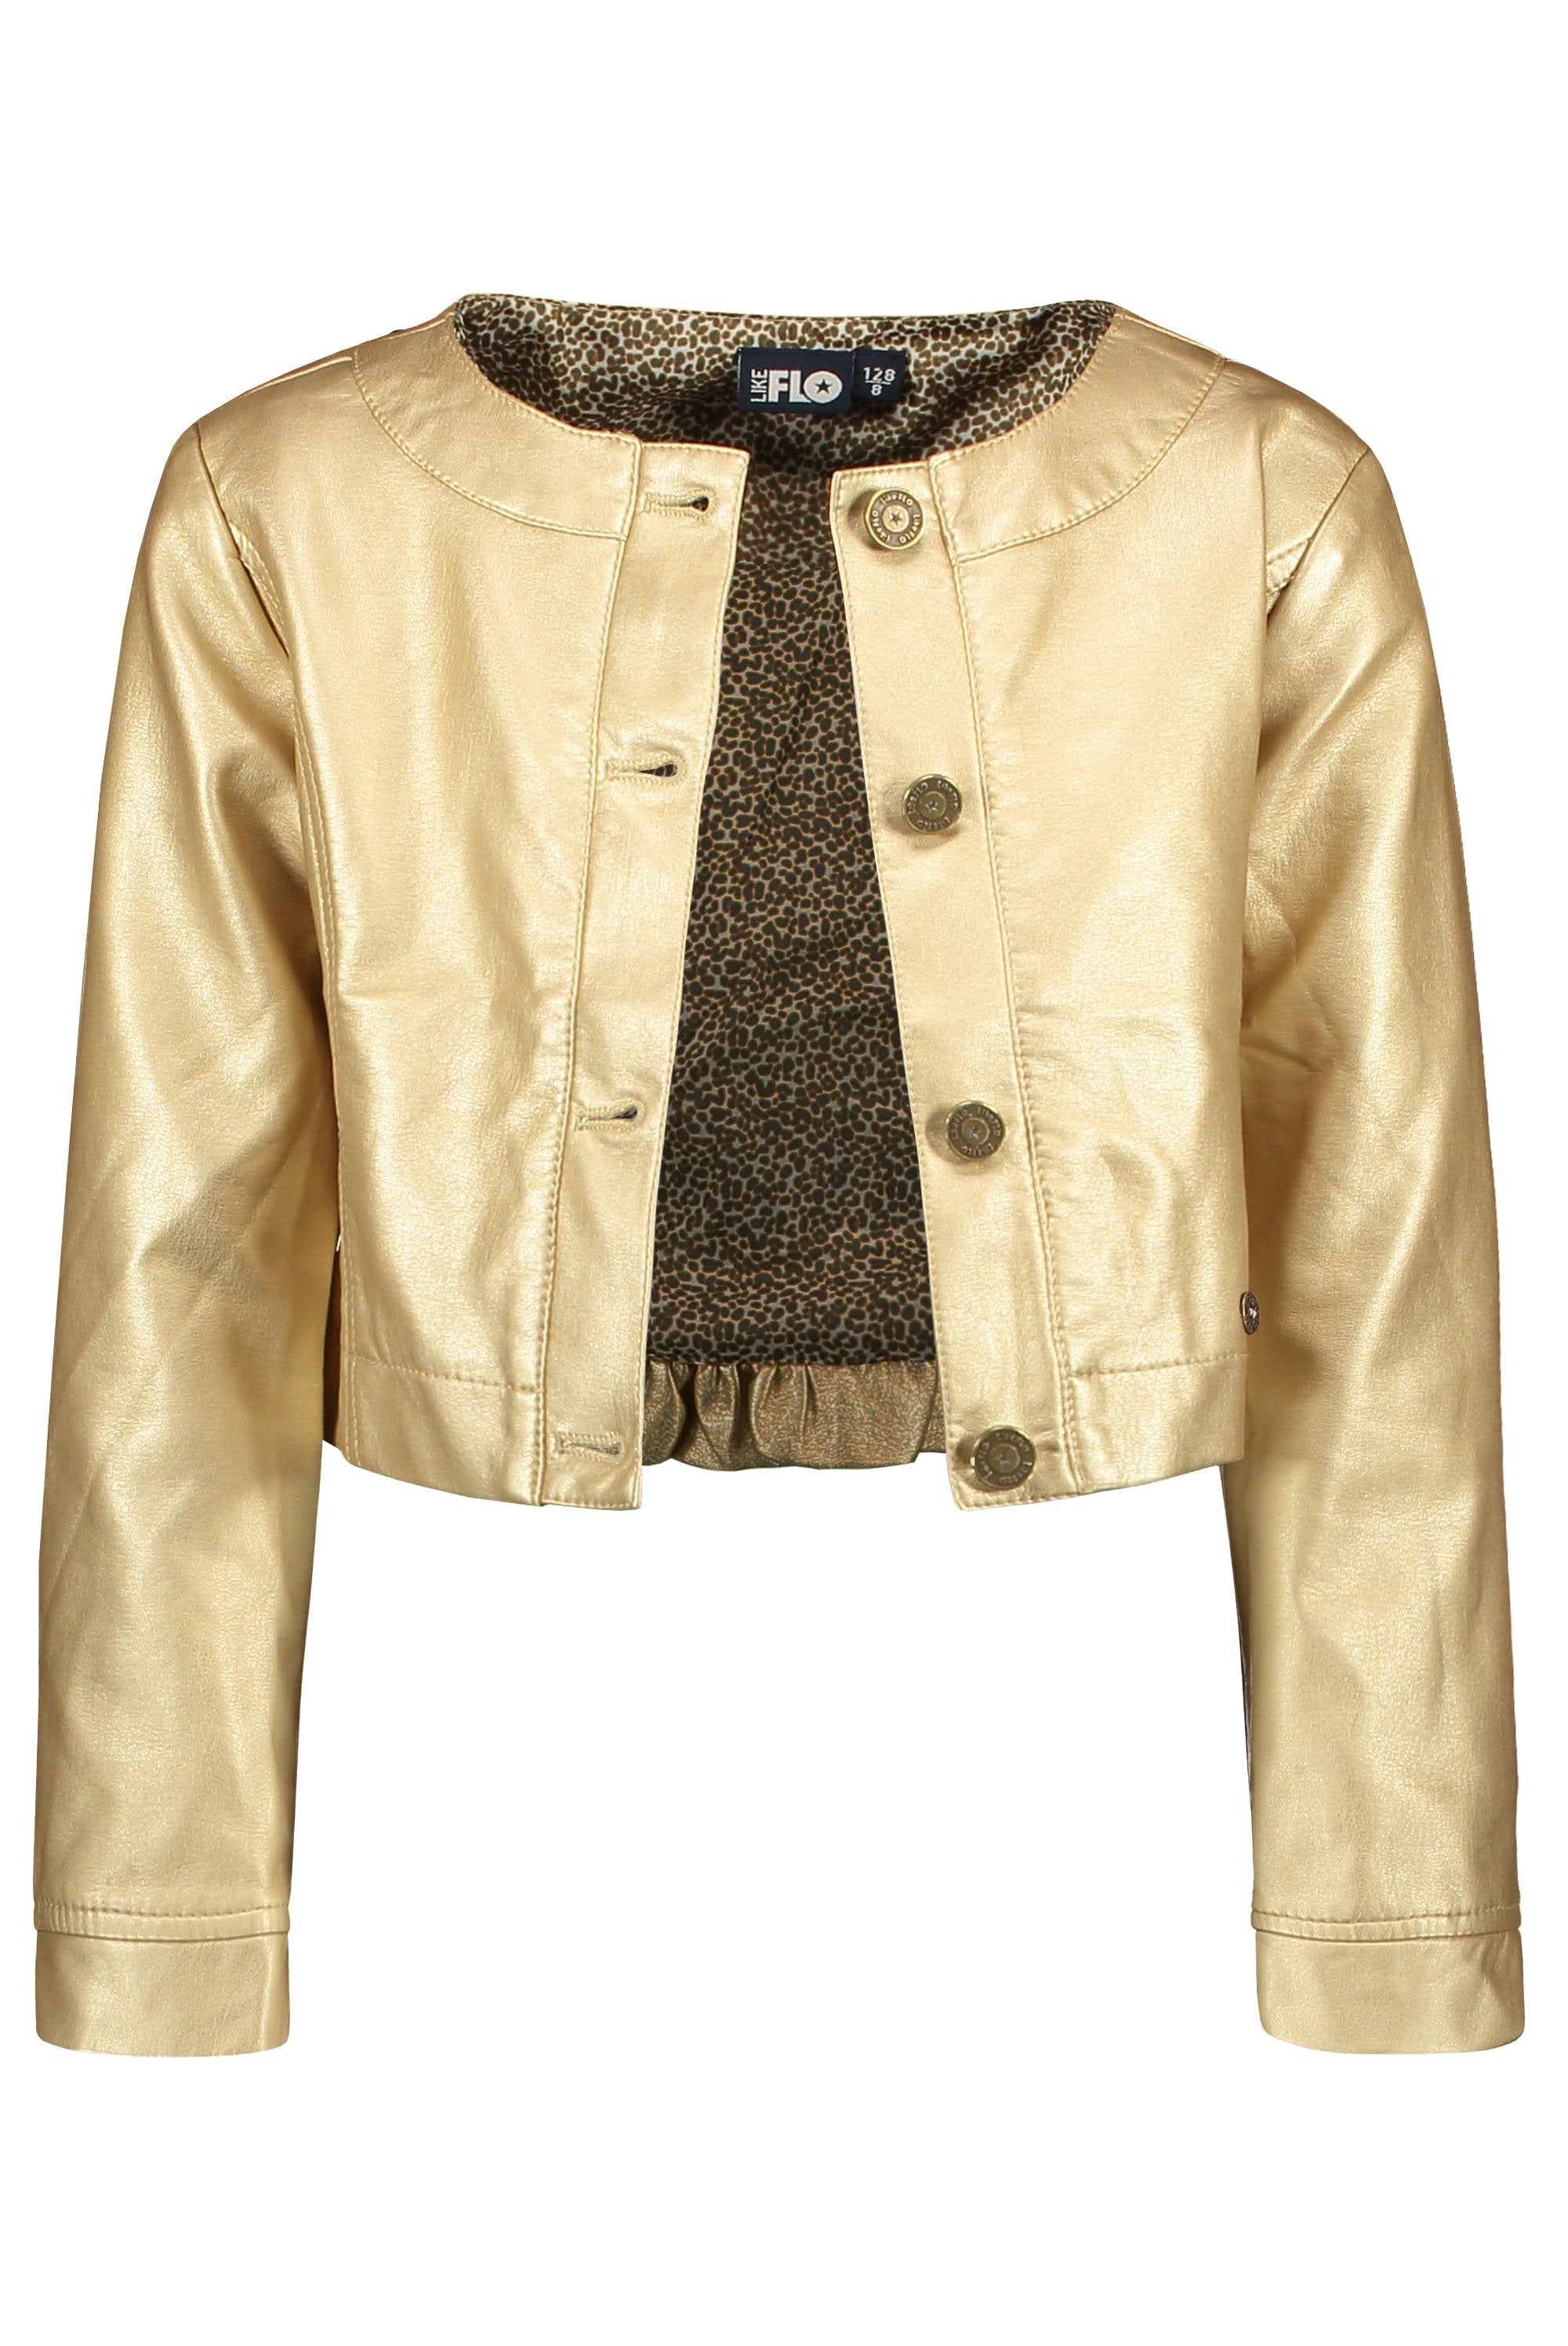 Meisjes Flo girls imi leather jacket van Like Flo in de kleur Gold in maat 140.